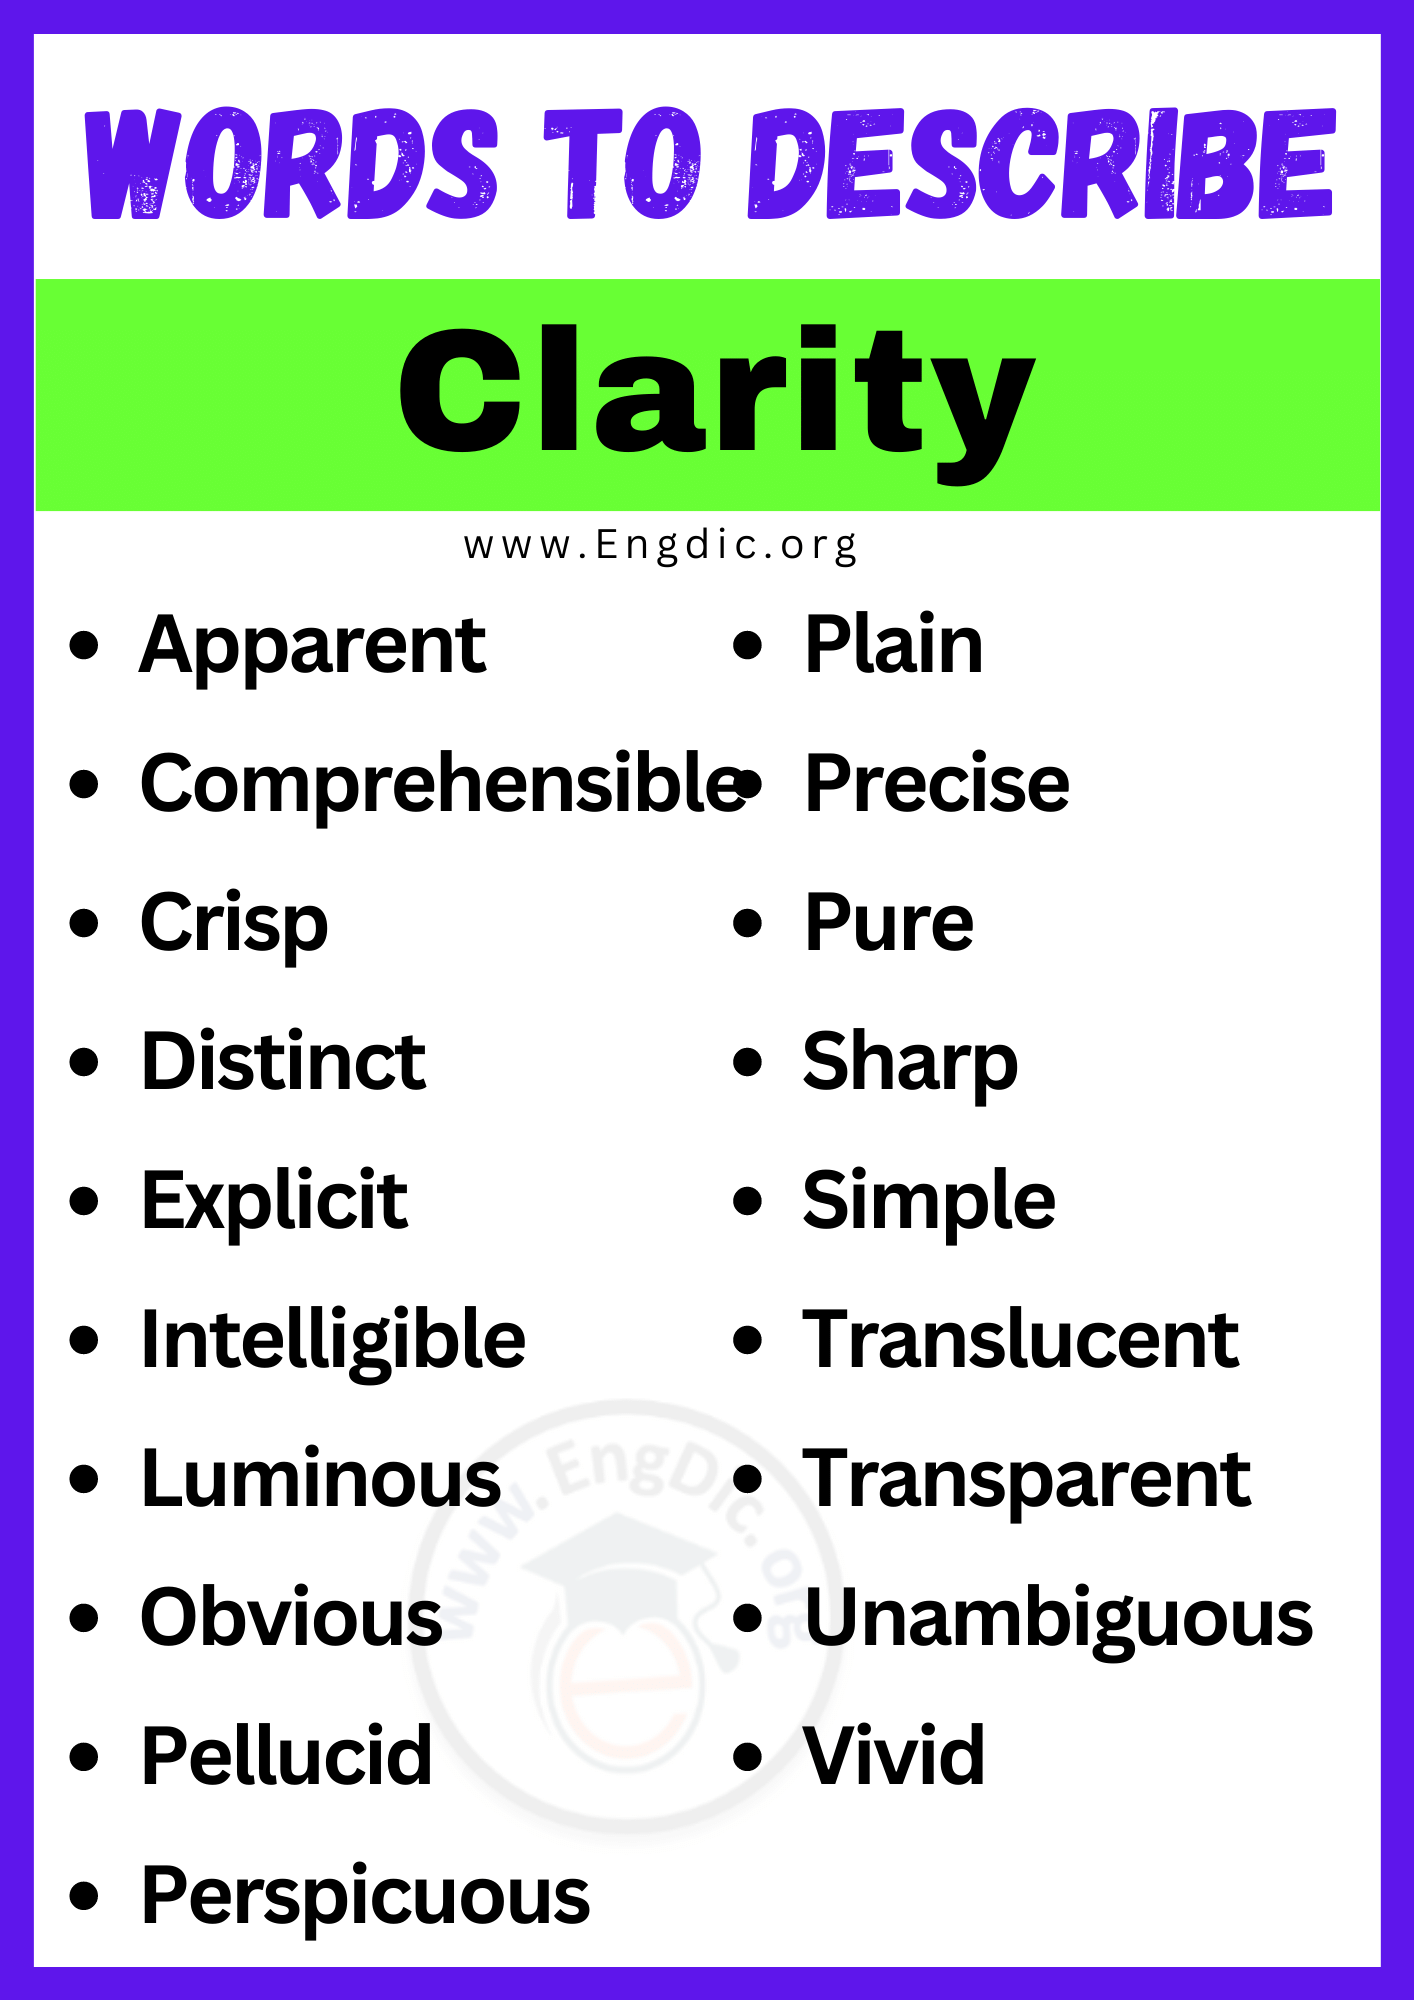 Words to Describe Clarity